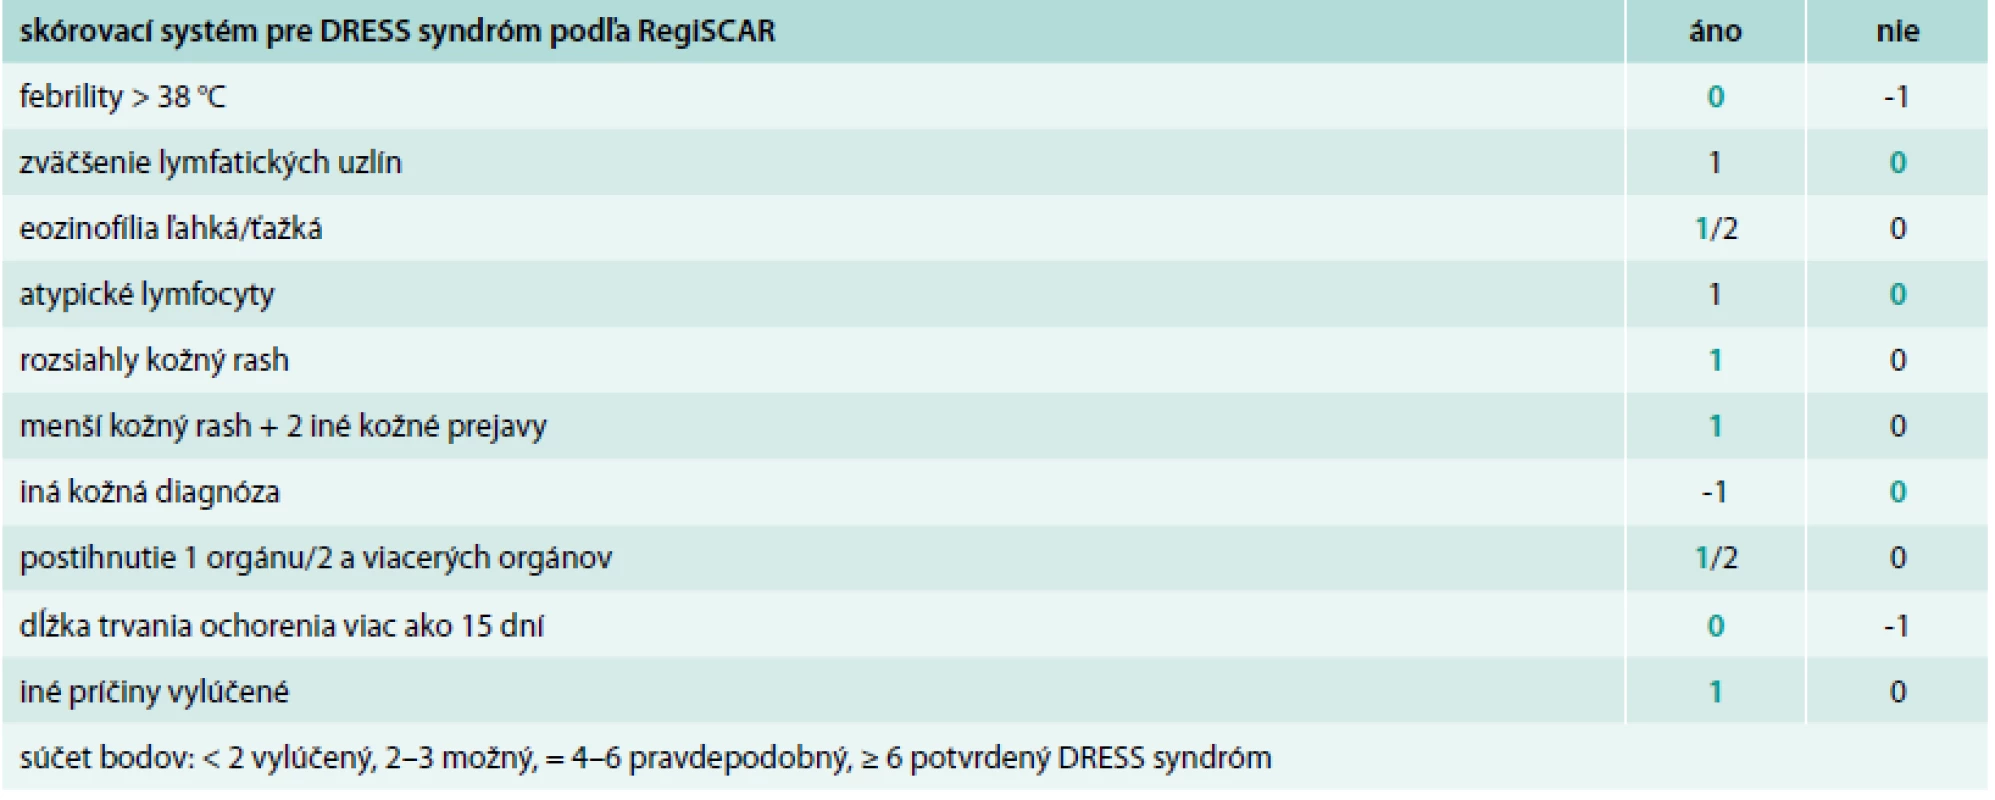 Skórovací systém pre DRESS syndróm podľa RegiSCAR [8,9]